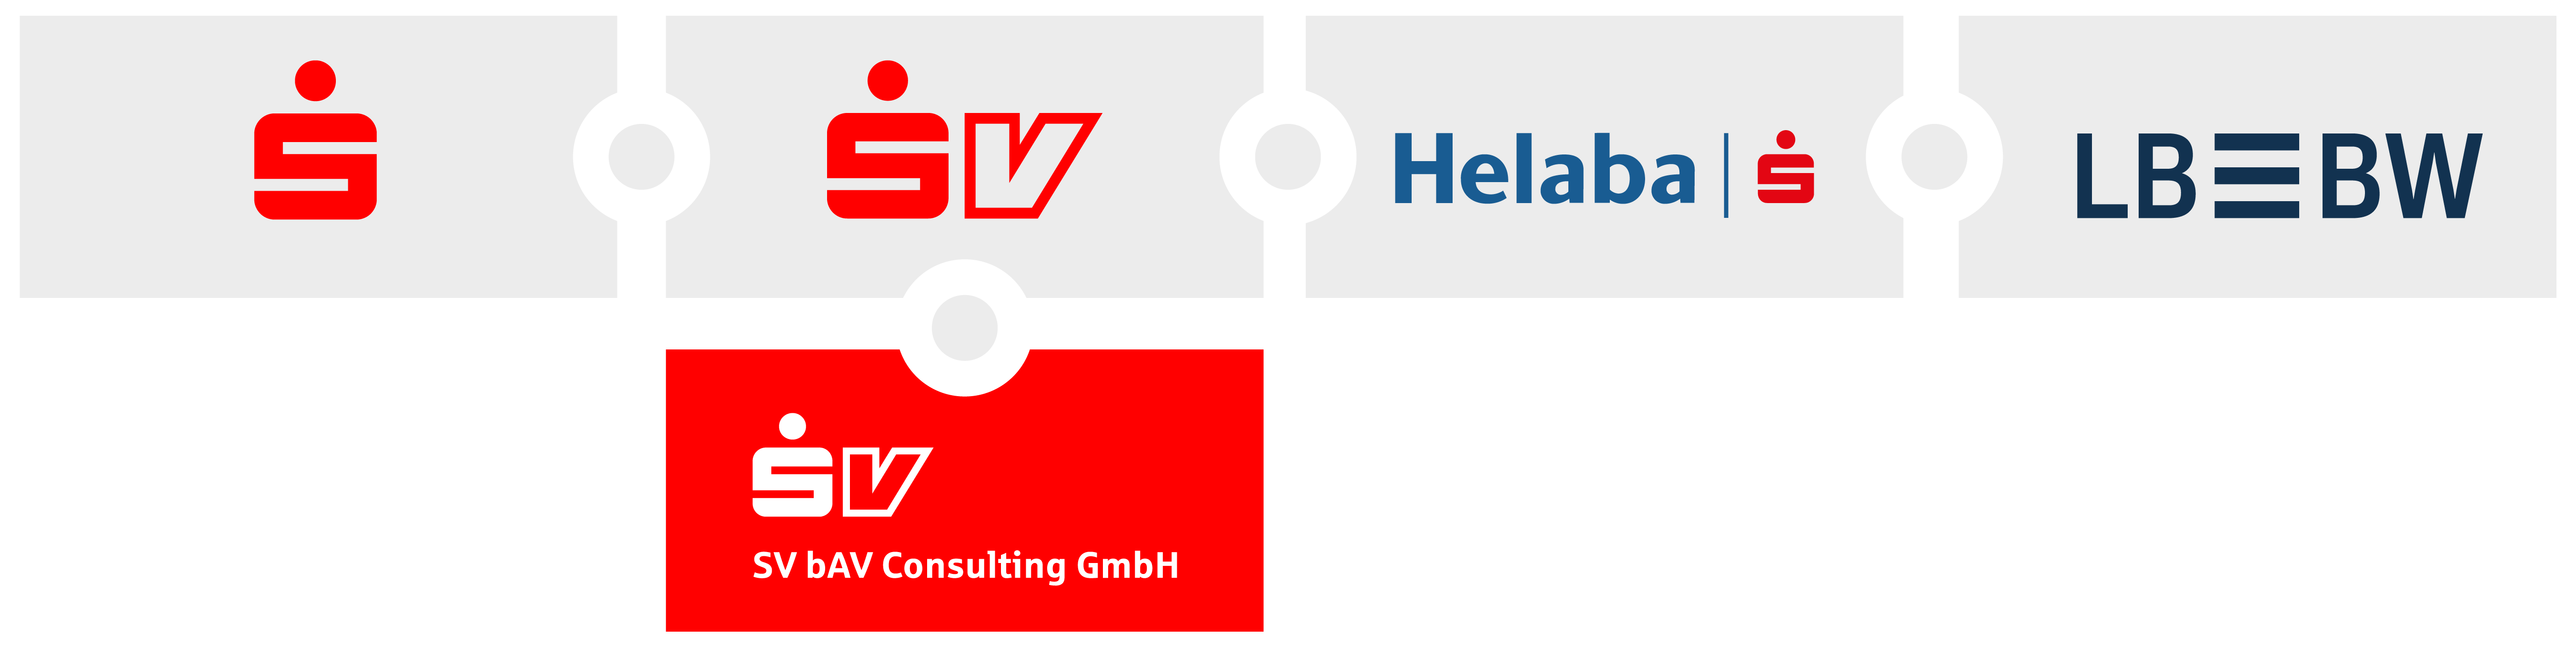 Abbildung der Logos von der Sparkasse, SV SparkassenVersicherung, Heleba, LBBW und der SV bAV Consulting GmbH